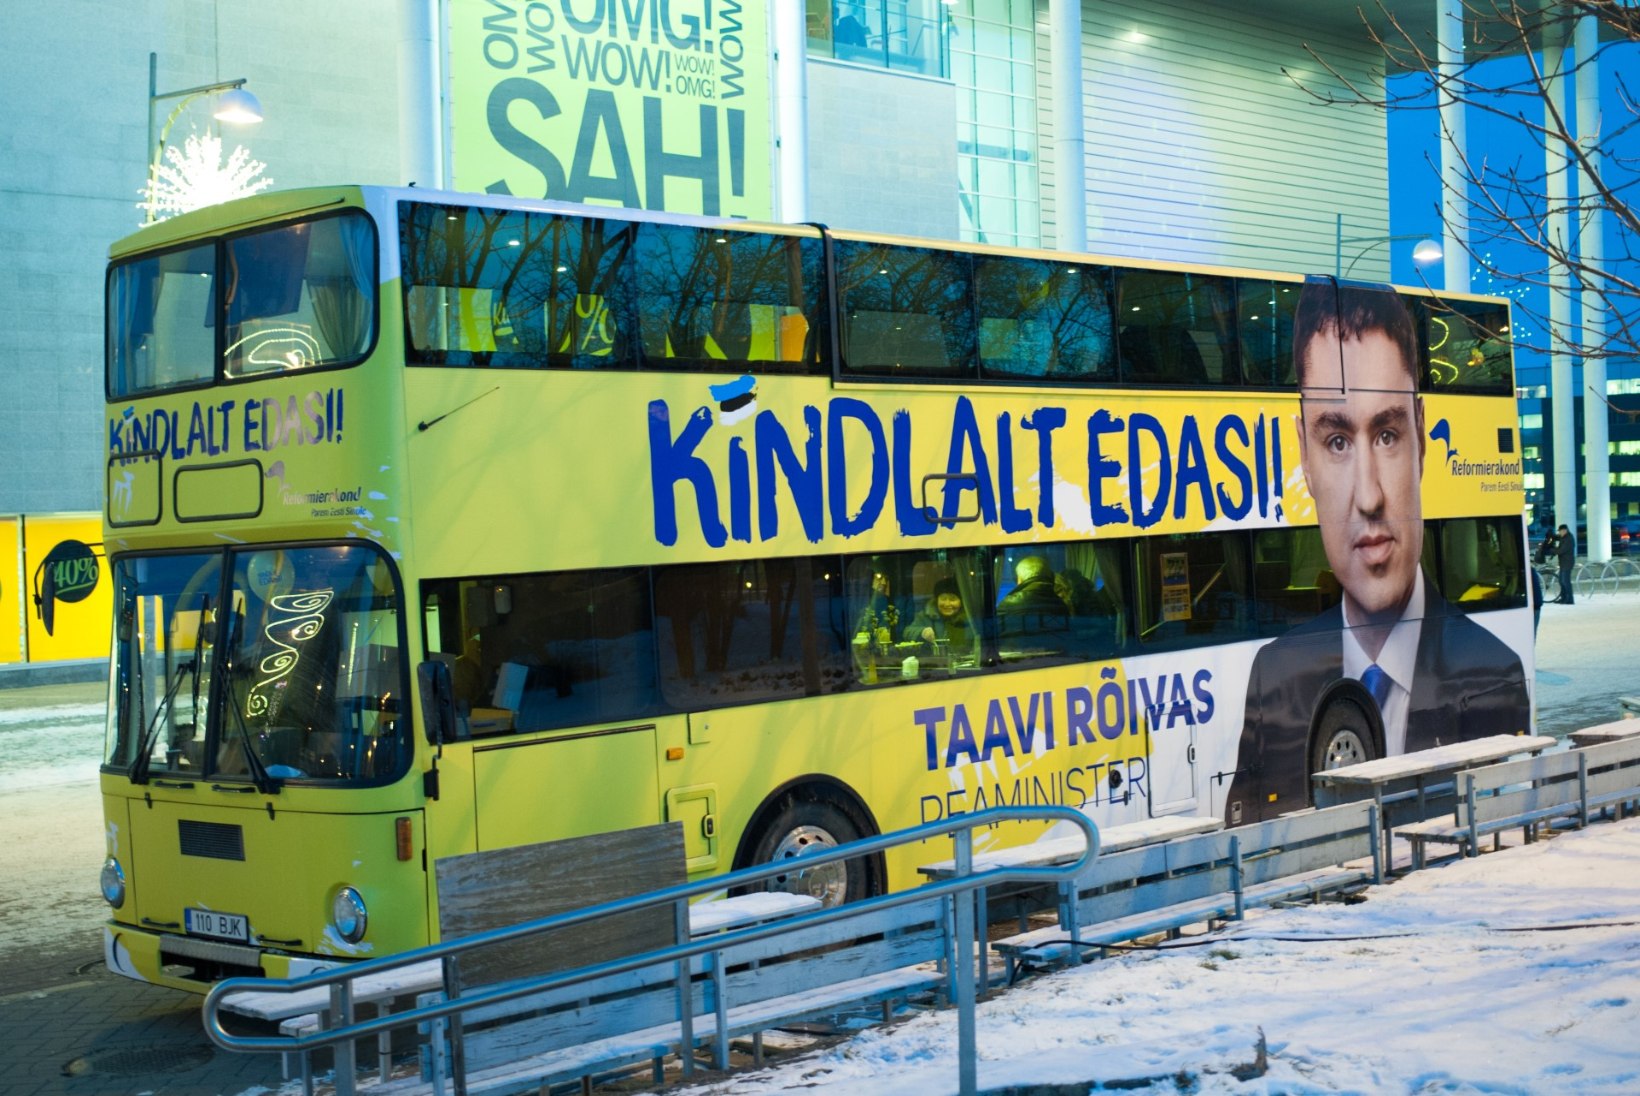 NAGU KAKS TILKA VETT: Taavi Rõivase pildiga buss meenutab "Tujurikkuja" riigibussi